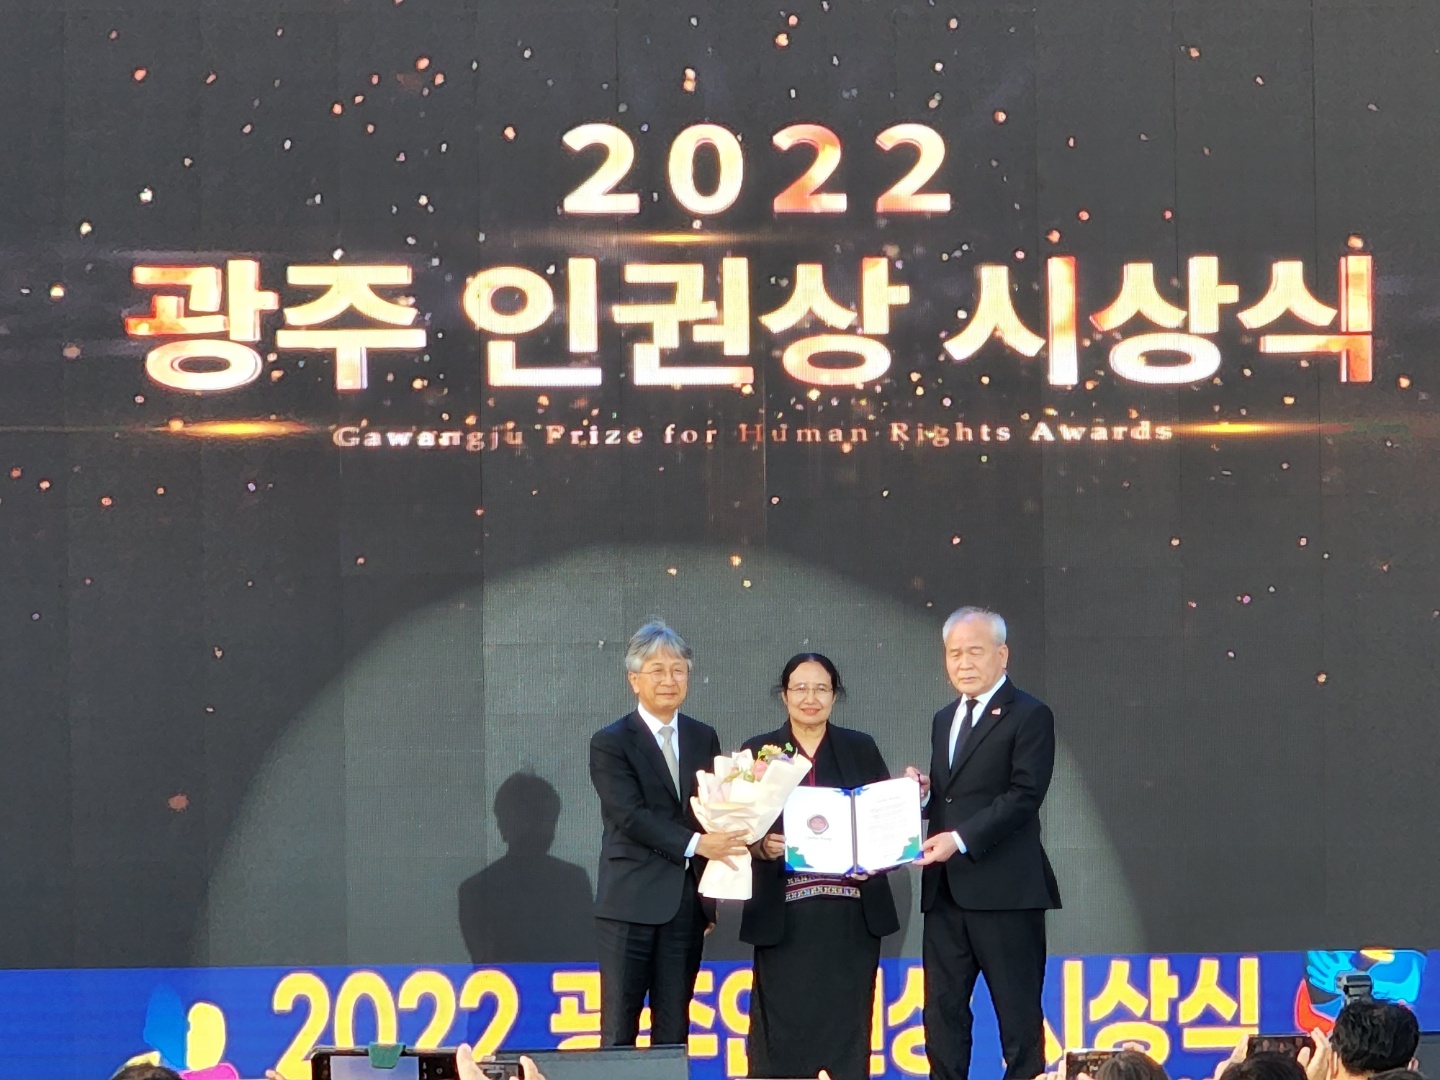 2022 광주인권상 수상자 신시아 마웅(가운데)과 강성구 부이사장(좌), 정동년 이사장(우)이 함께 촬영하고 있다.